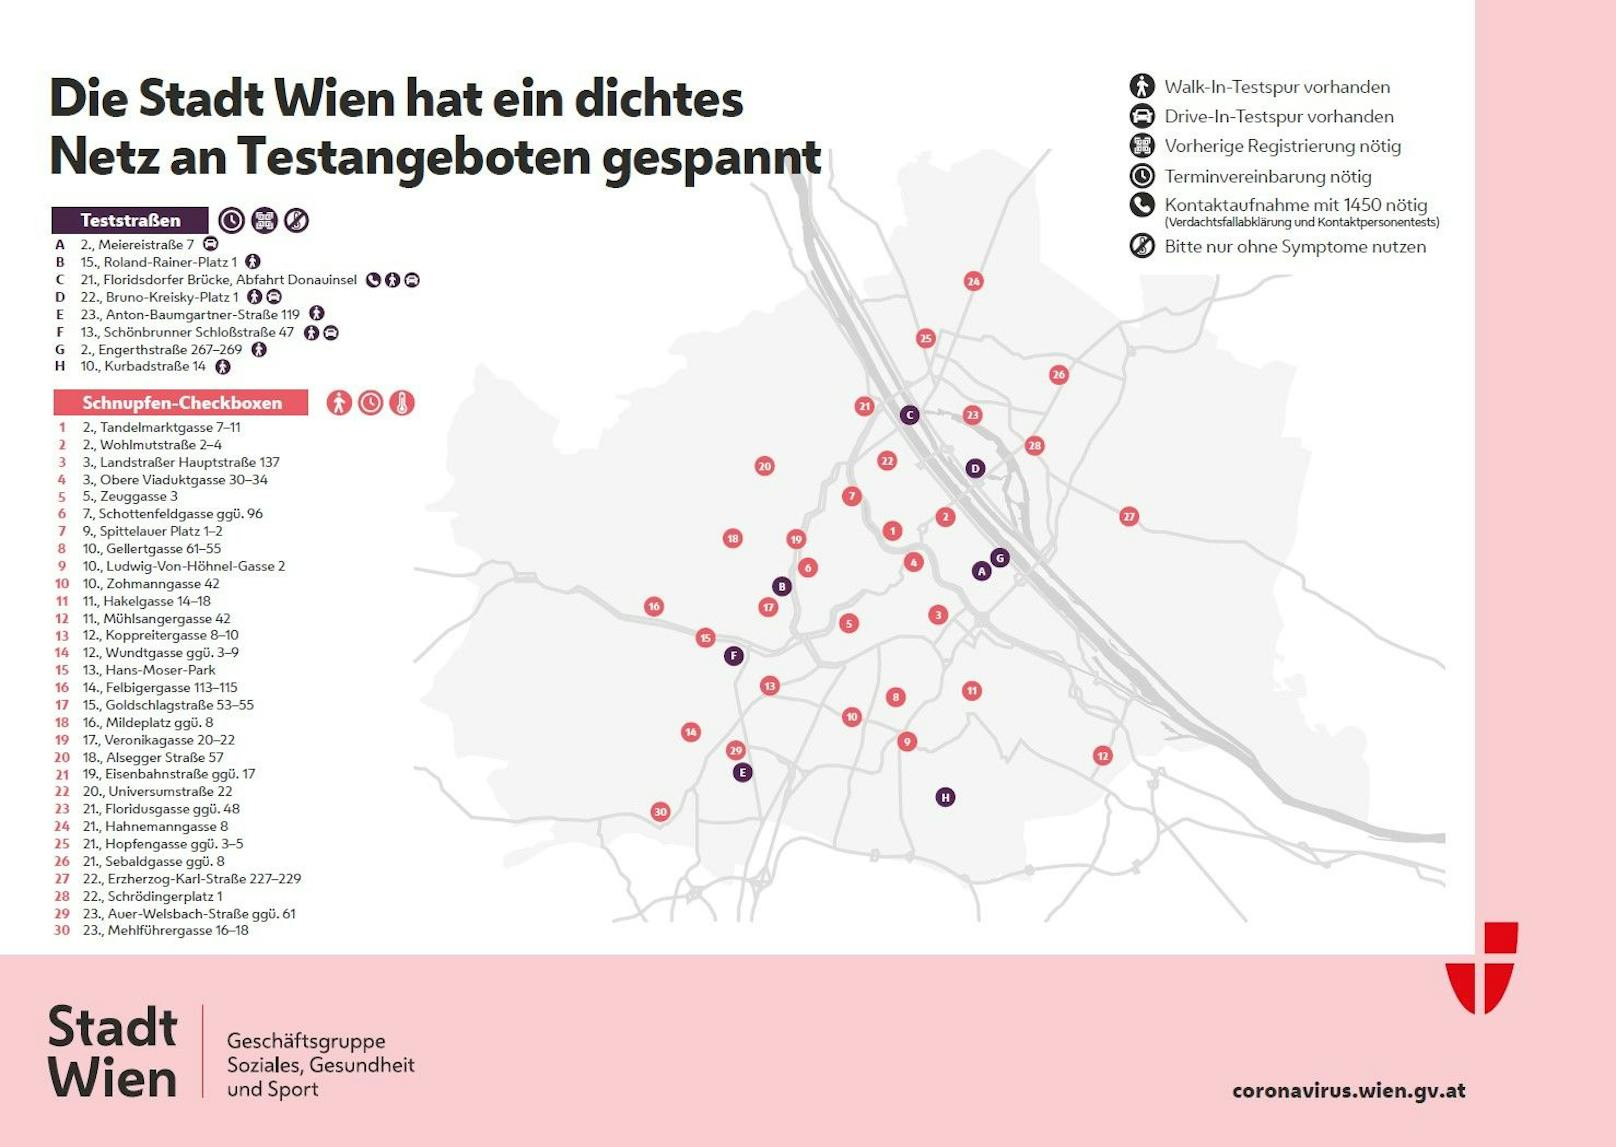 Alle Teststandorte der Stadt Wien im Überblick.